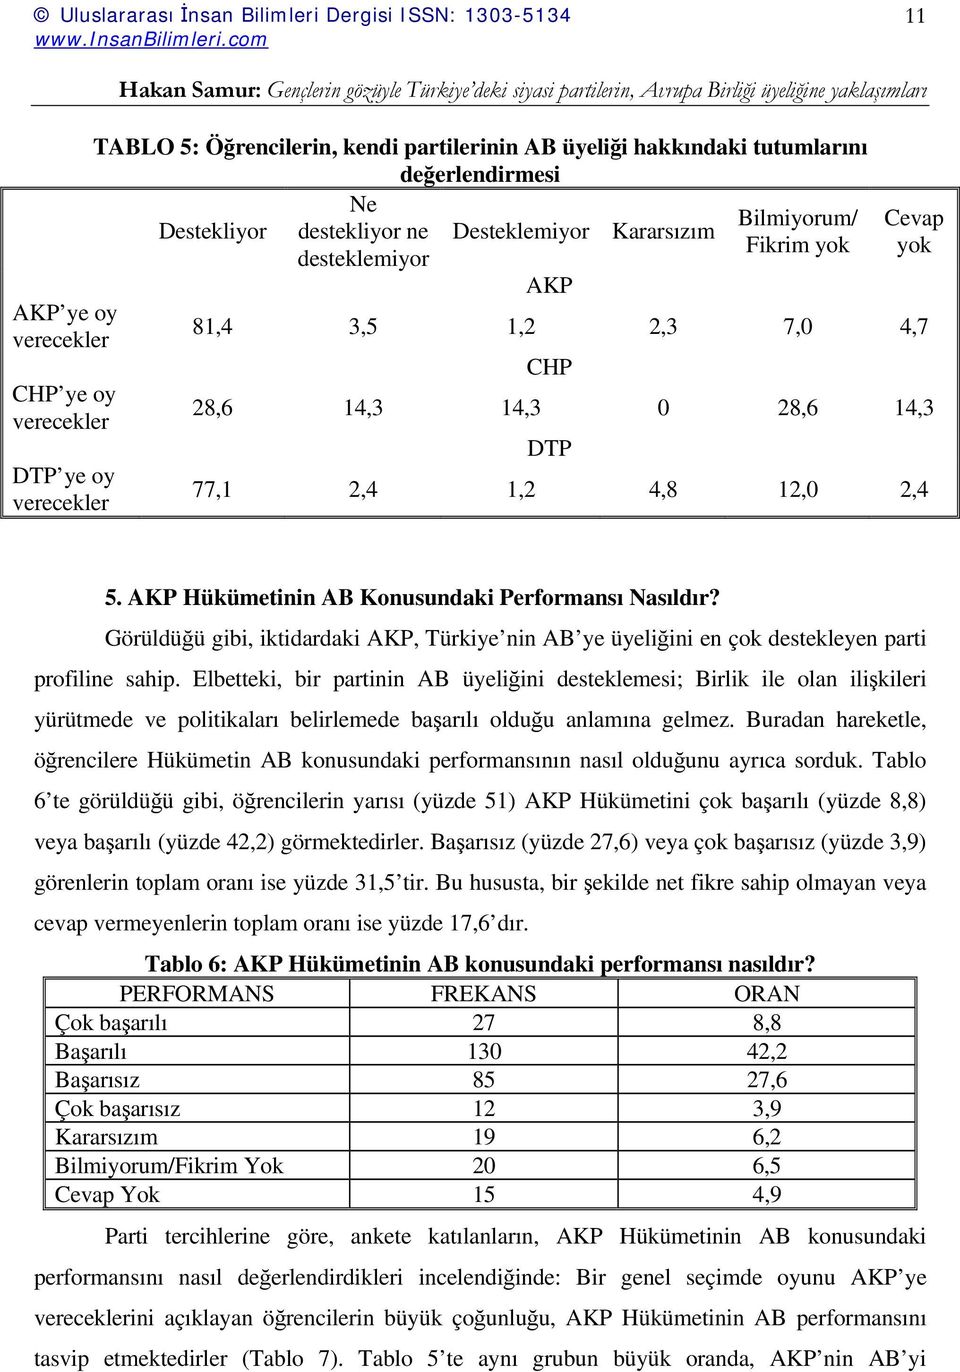 AKP Hükümetinin AB Konusundaki Performansı Nasıldır? Görüldüğü gibi, iktidardaki AKP, Türkiye nin AB ye üyeliğini en çok destekleyen parti profiline sahip.